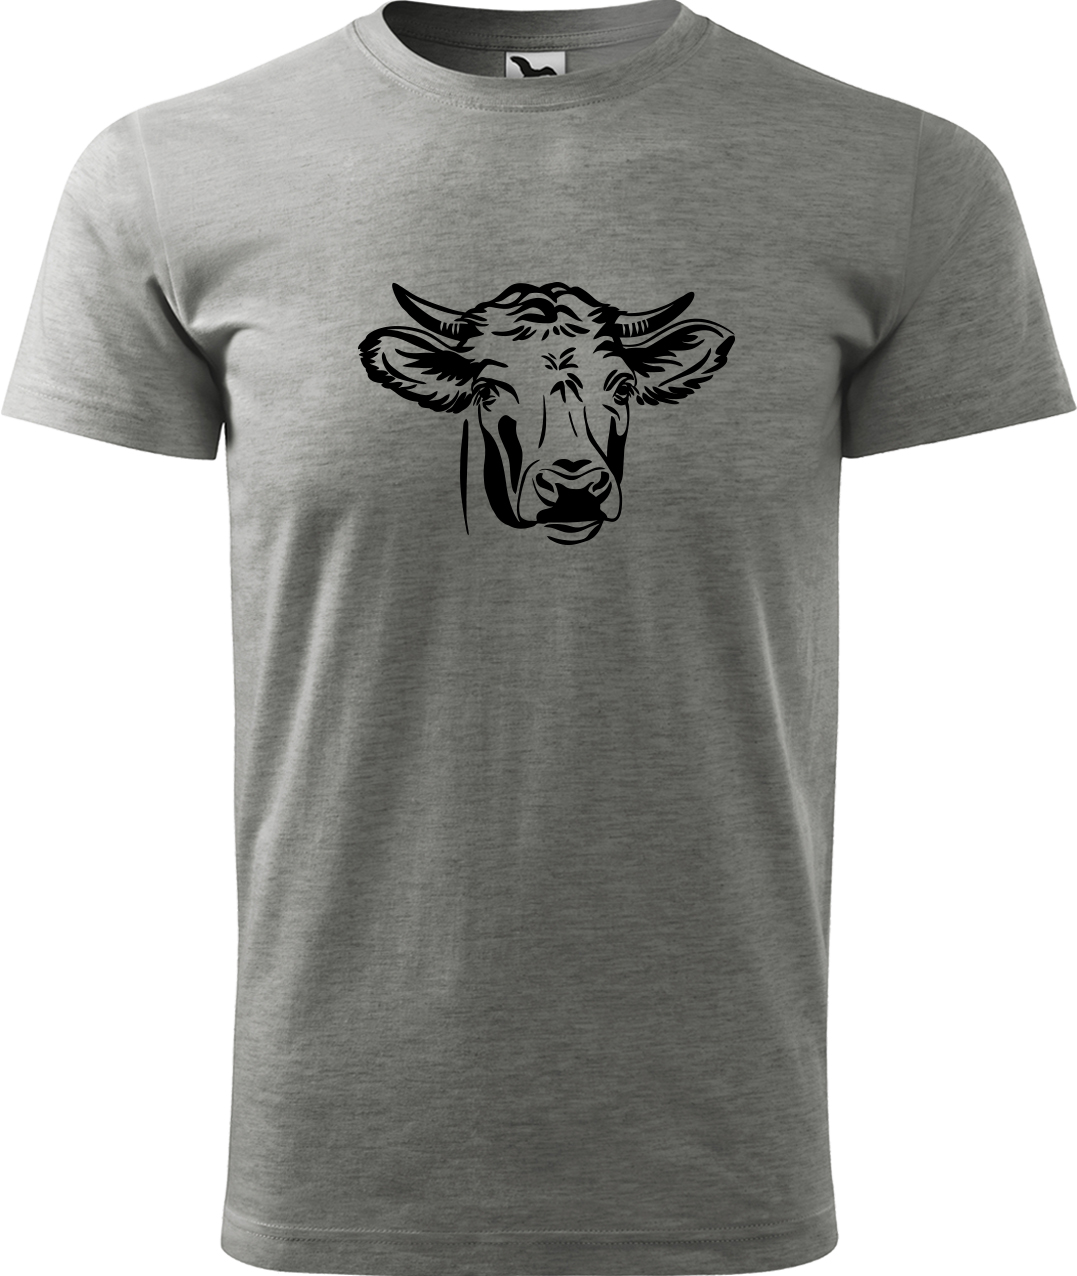 Pánské tričko s krávou - Hlava krávy Velikost: L, Barva: Tmavě šedý melír (12), Střih: pánský